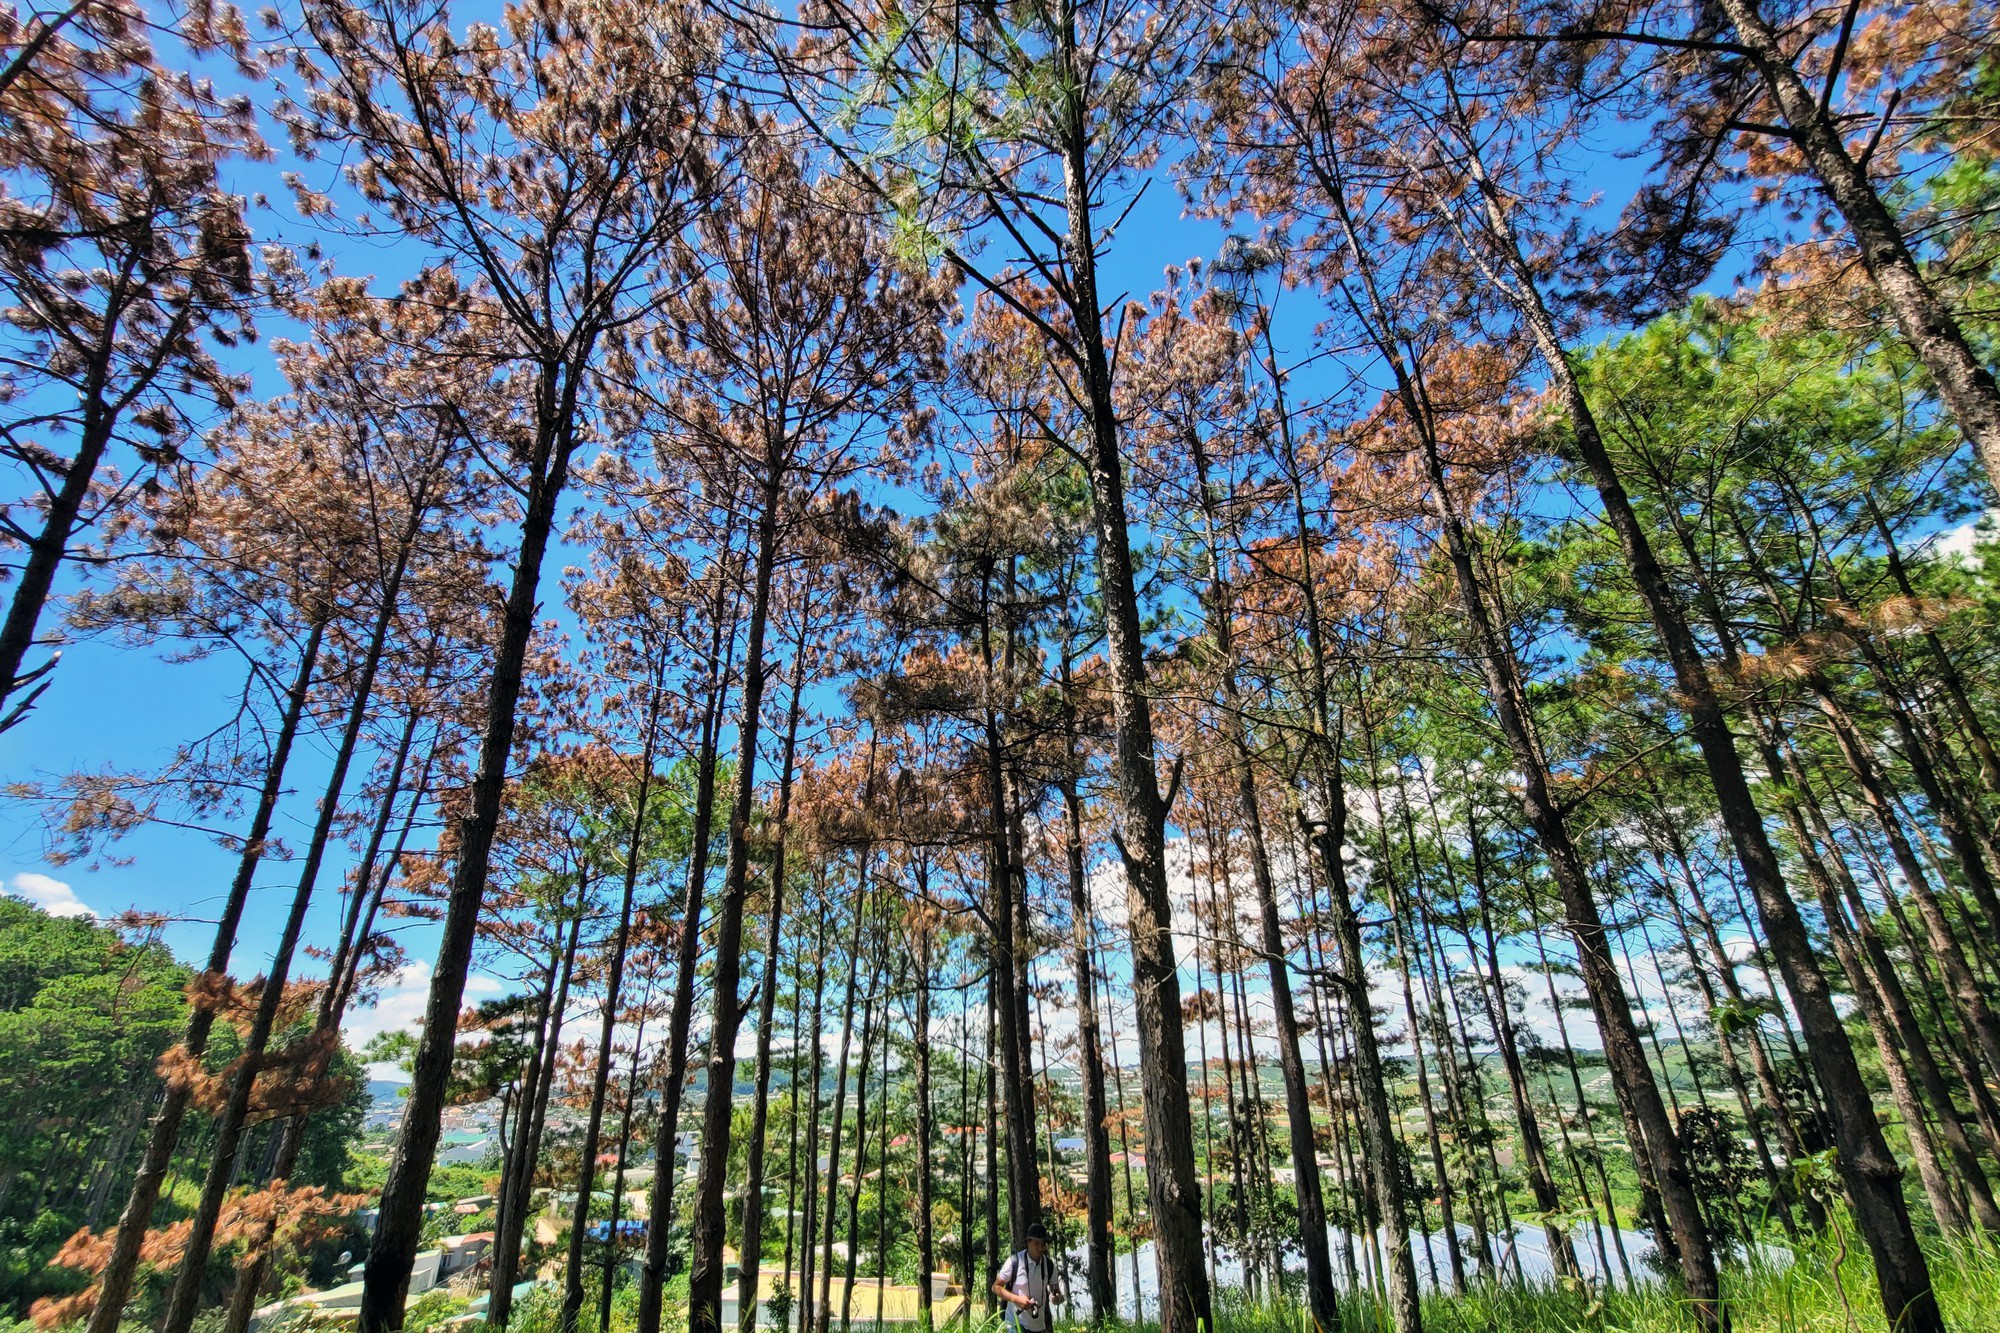 100 cây thông trong rừng ở Lâm Đồng bị đầu độc, cây chết lá không thể cứu - Ảnh 1.